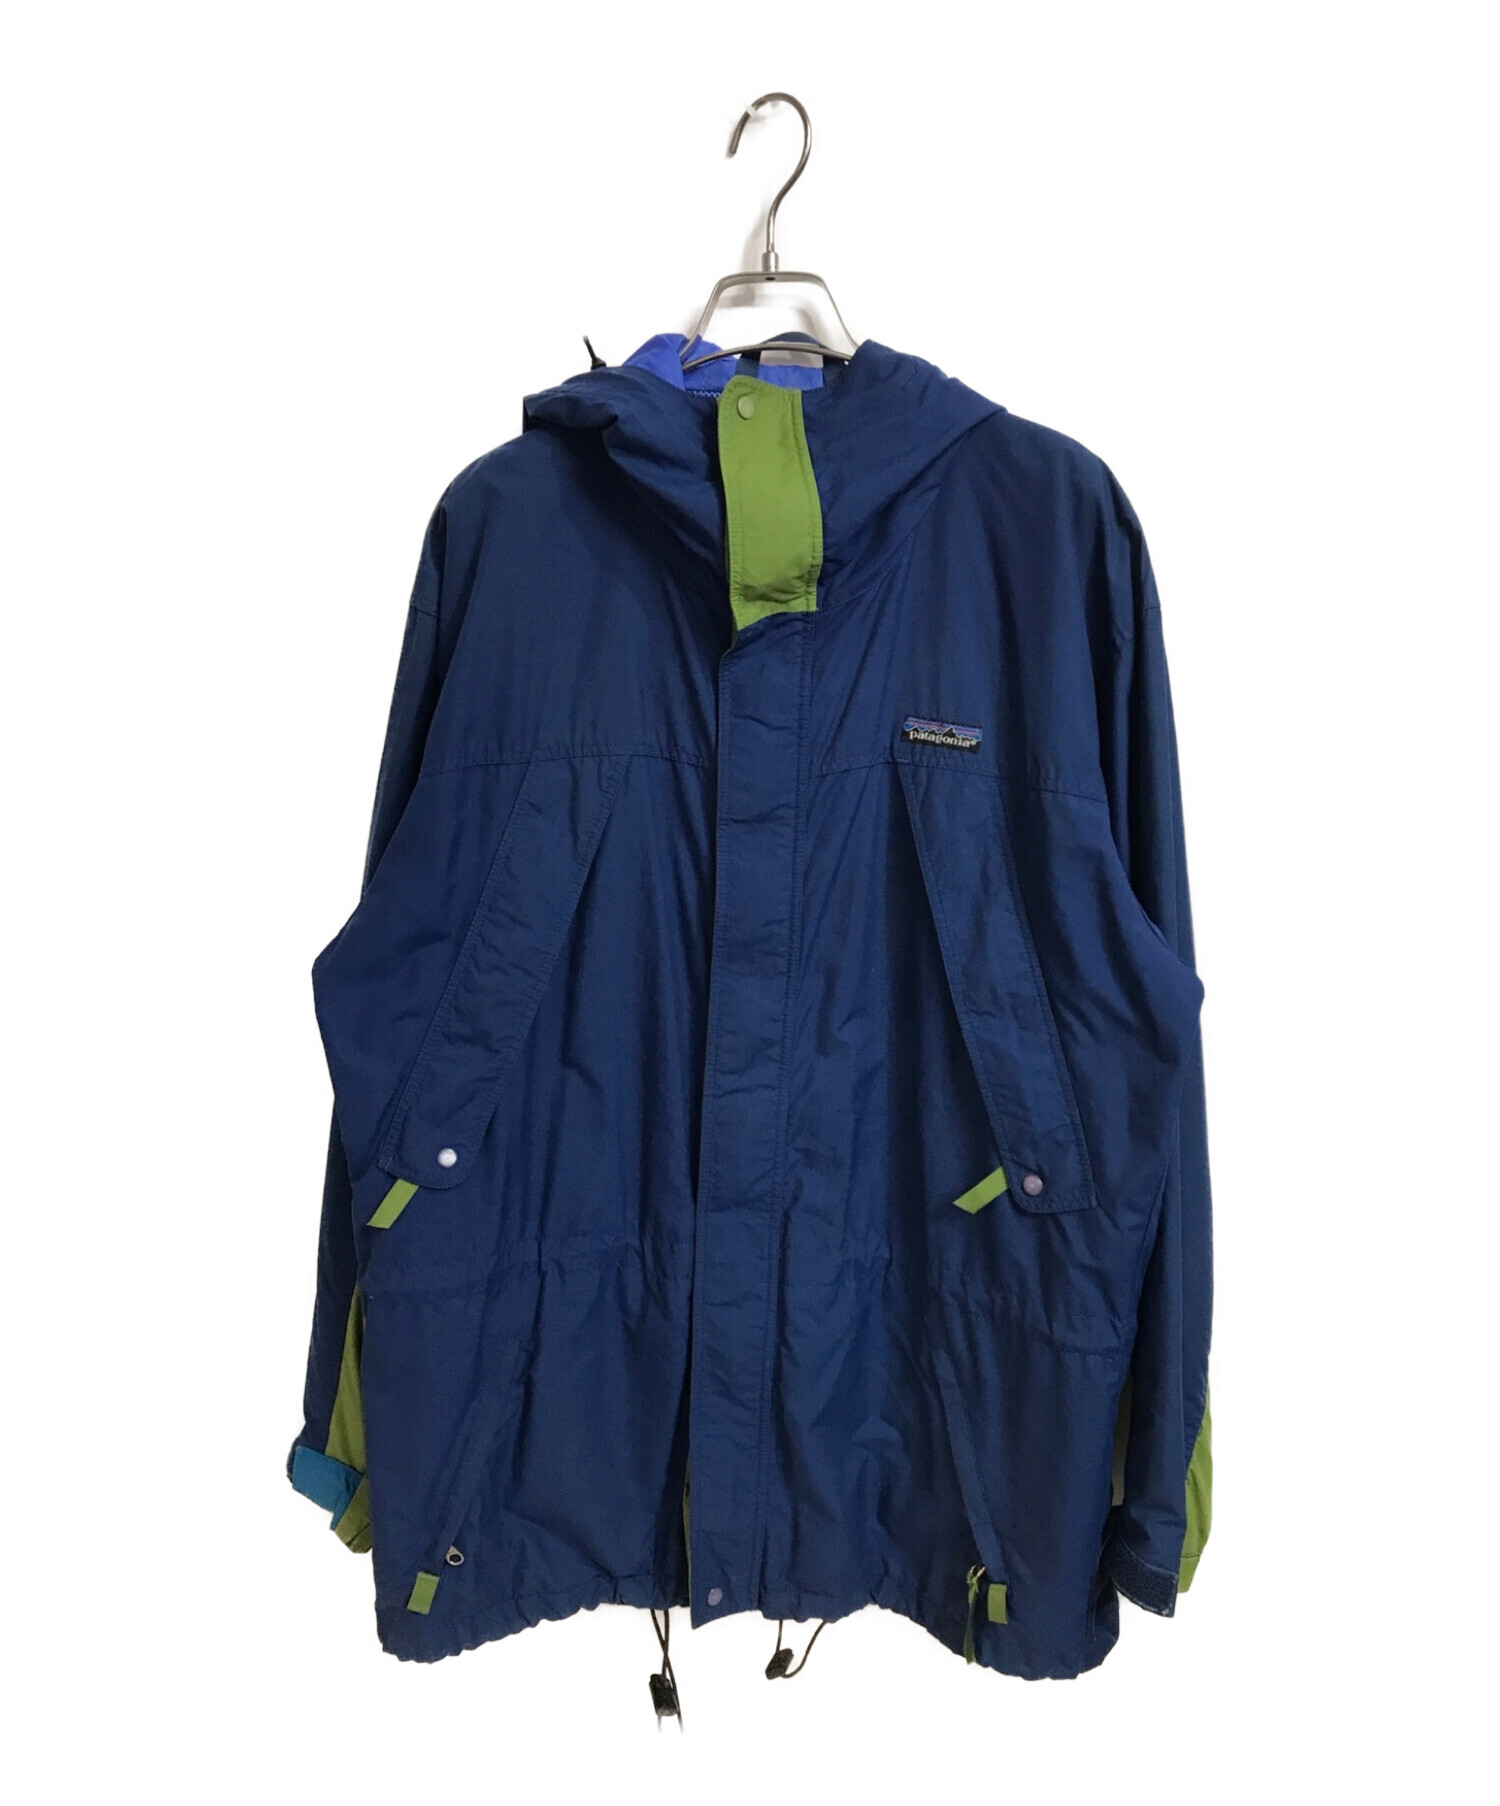 Patagonia (パタゴニア) ストームジャケット ブルー サイズ:S